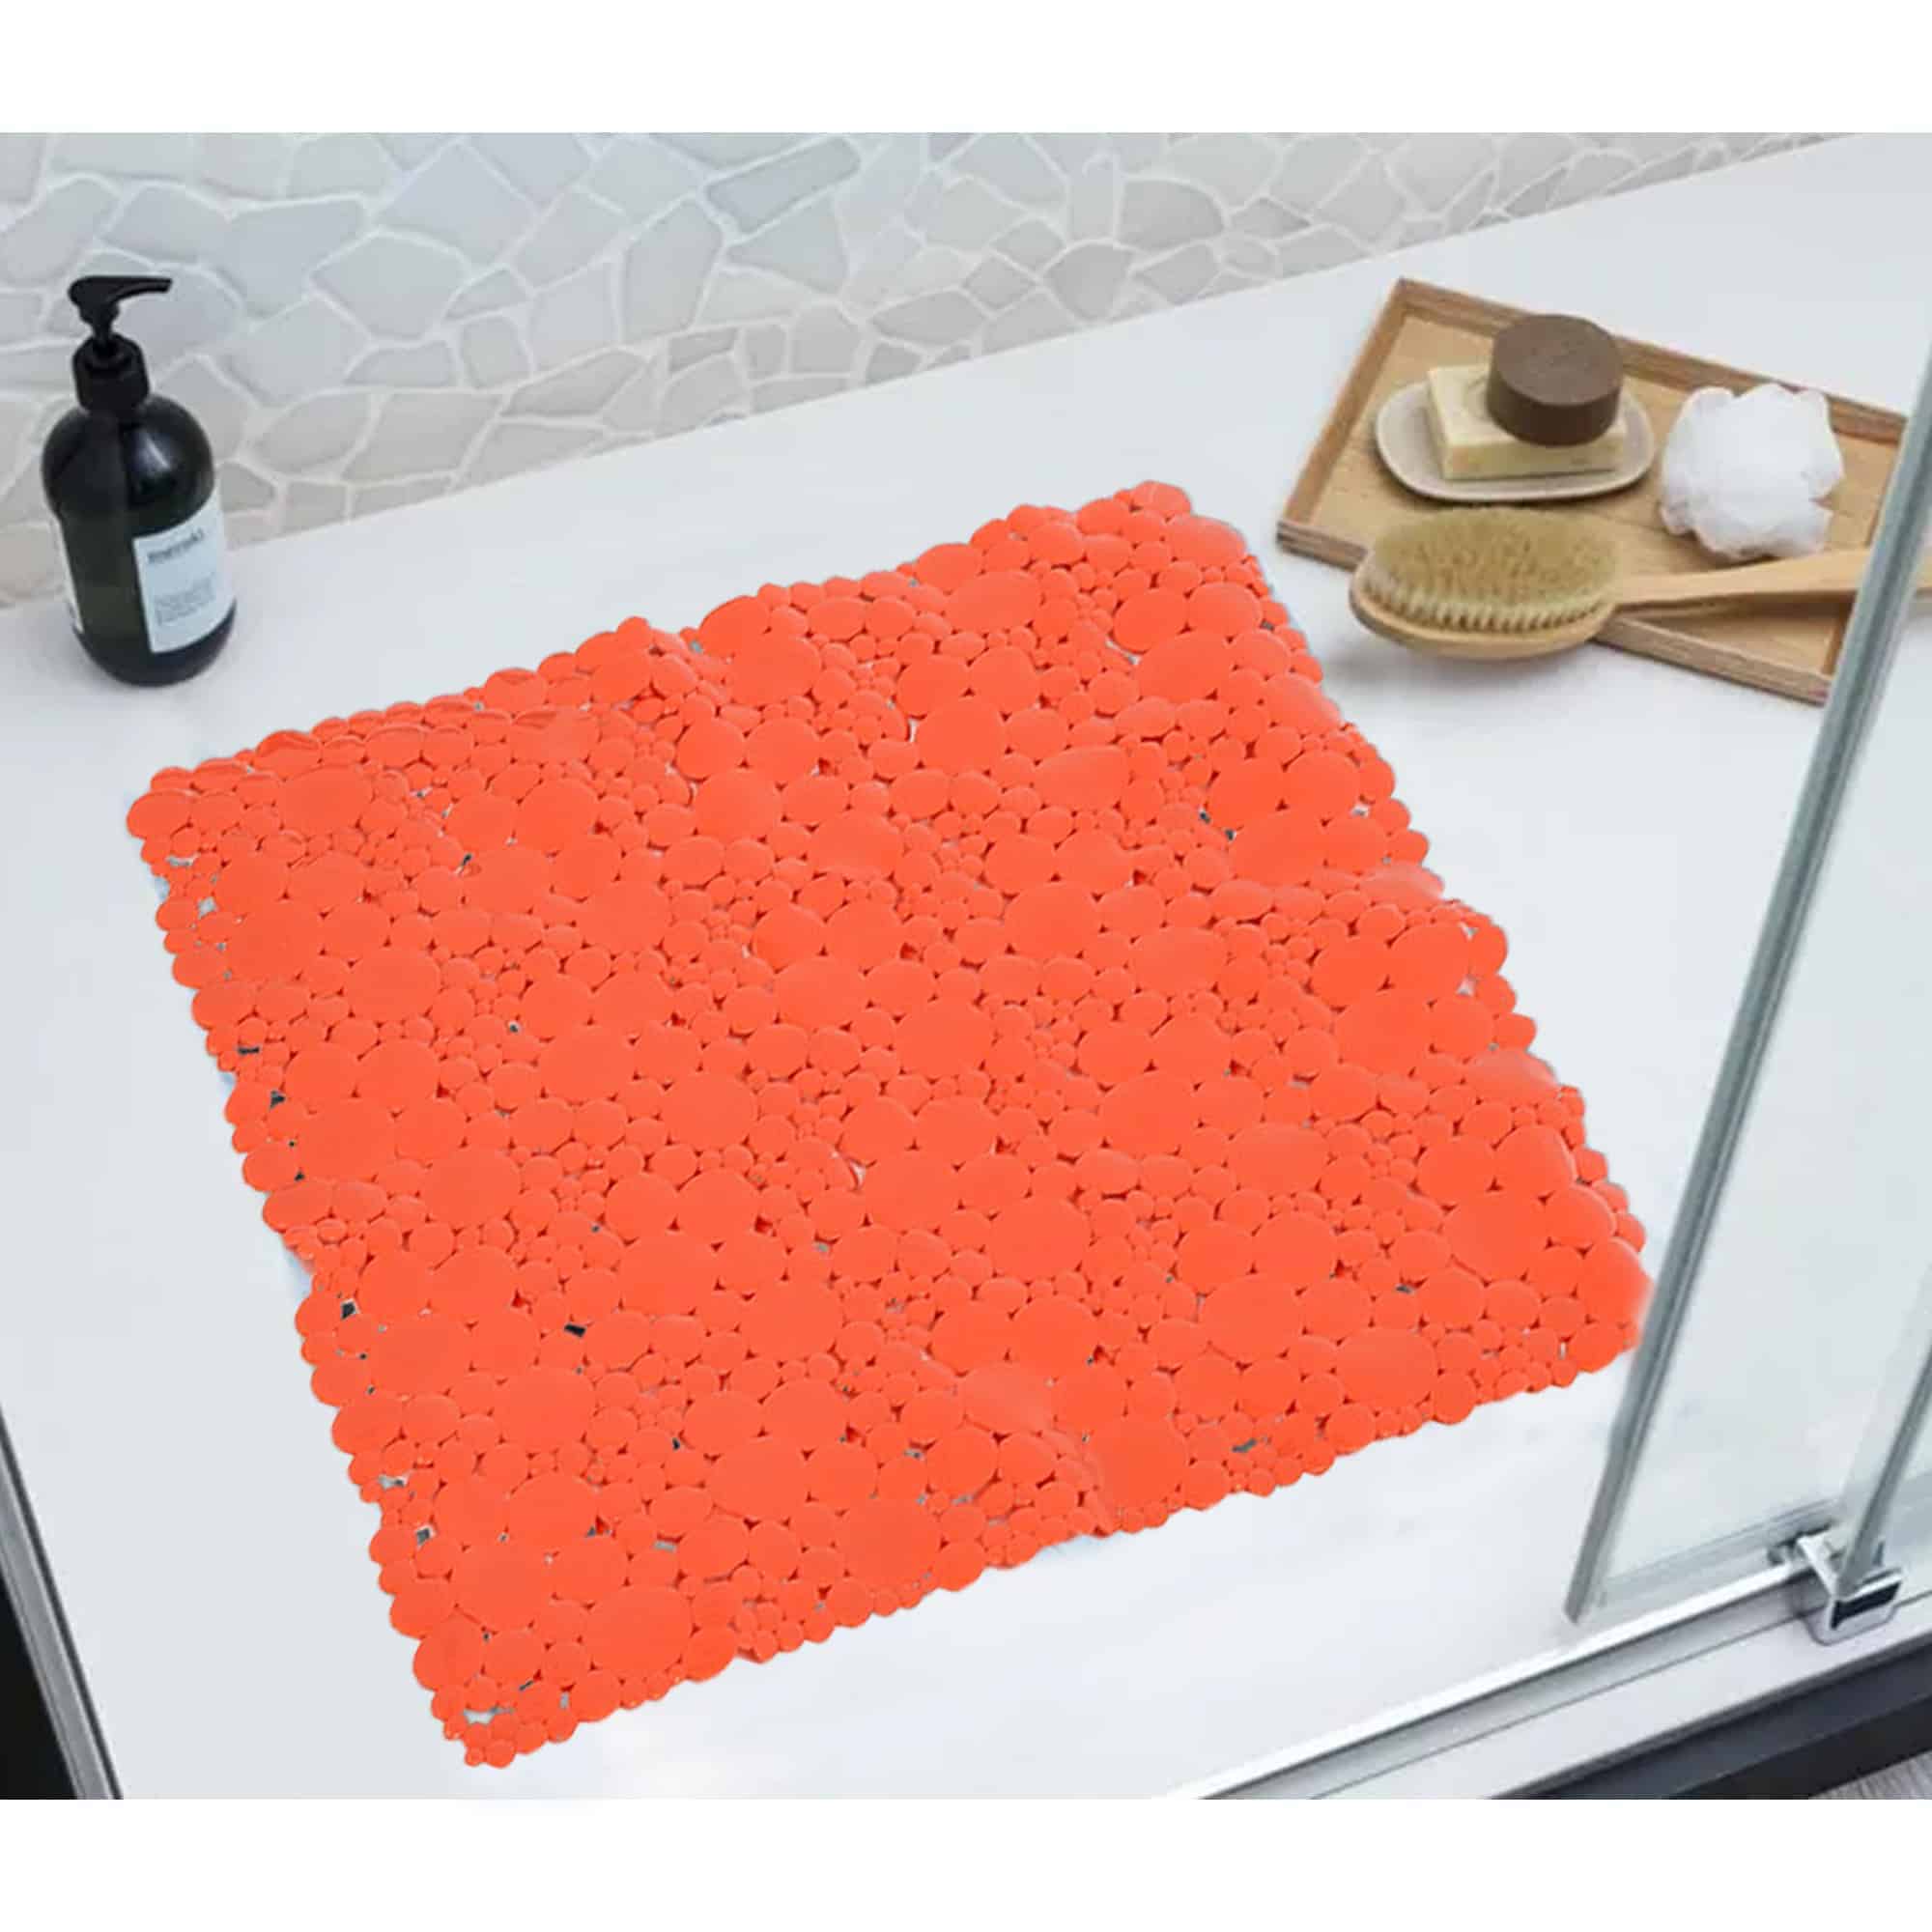 Square Shower Mat: Non-Slip Square Floor Shower Mat